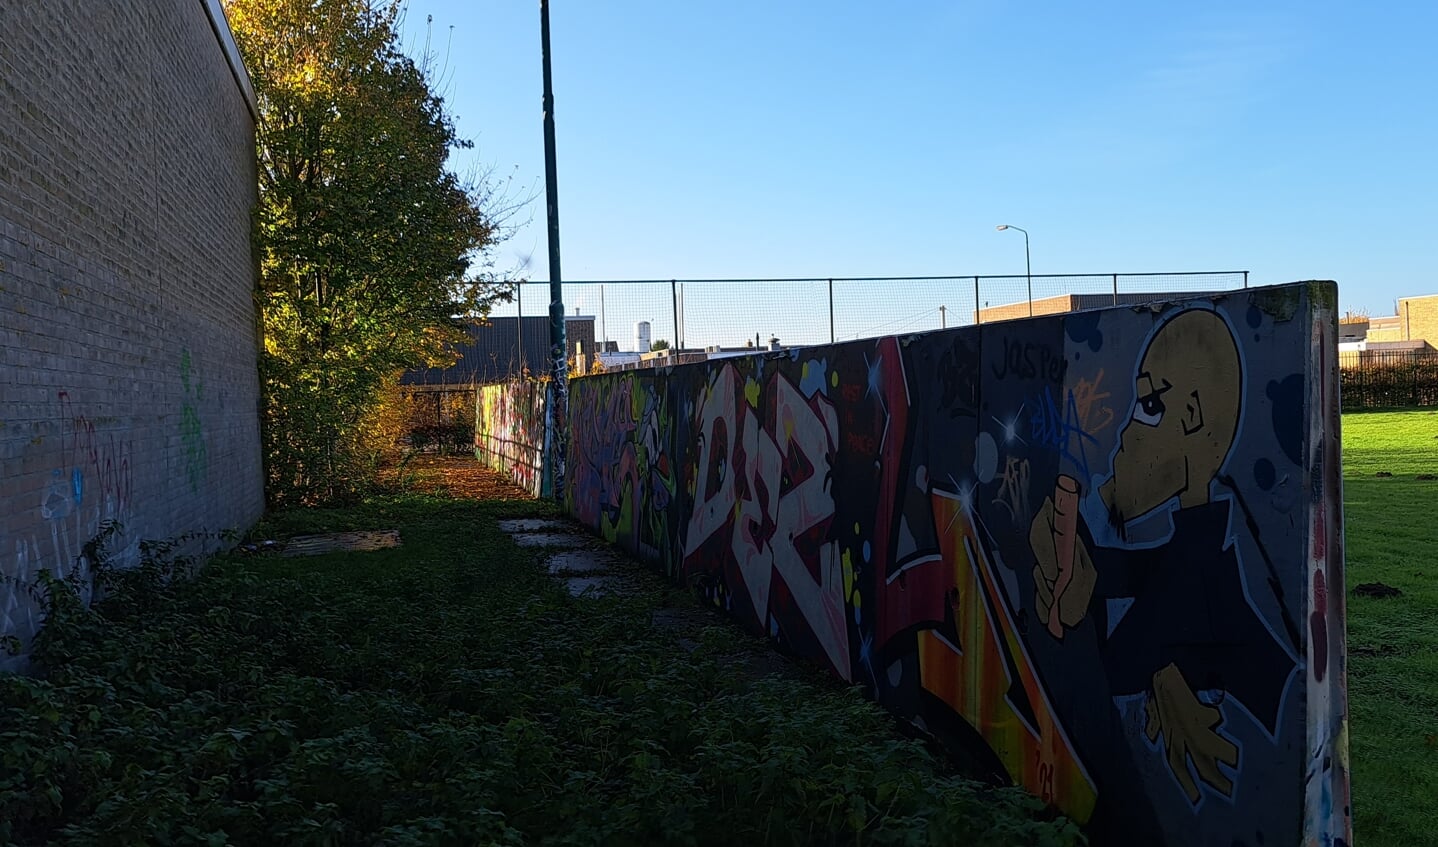 Achterkant van de graffiti-panelen bij t Honk.